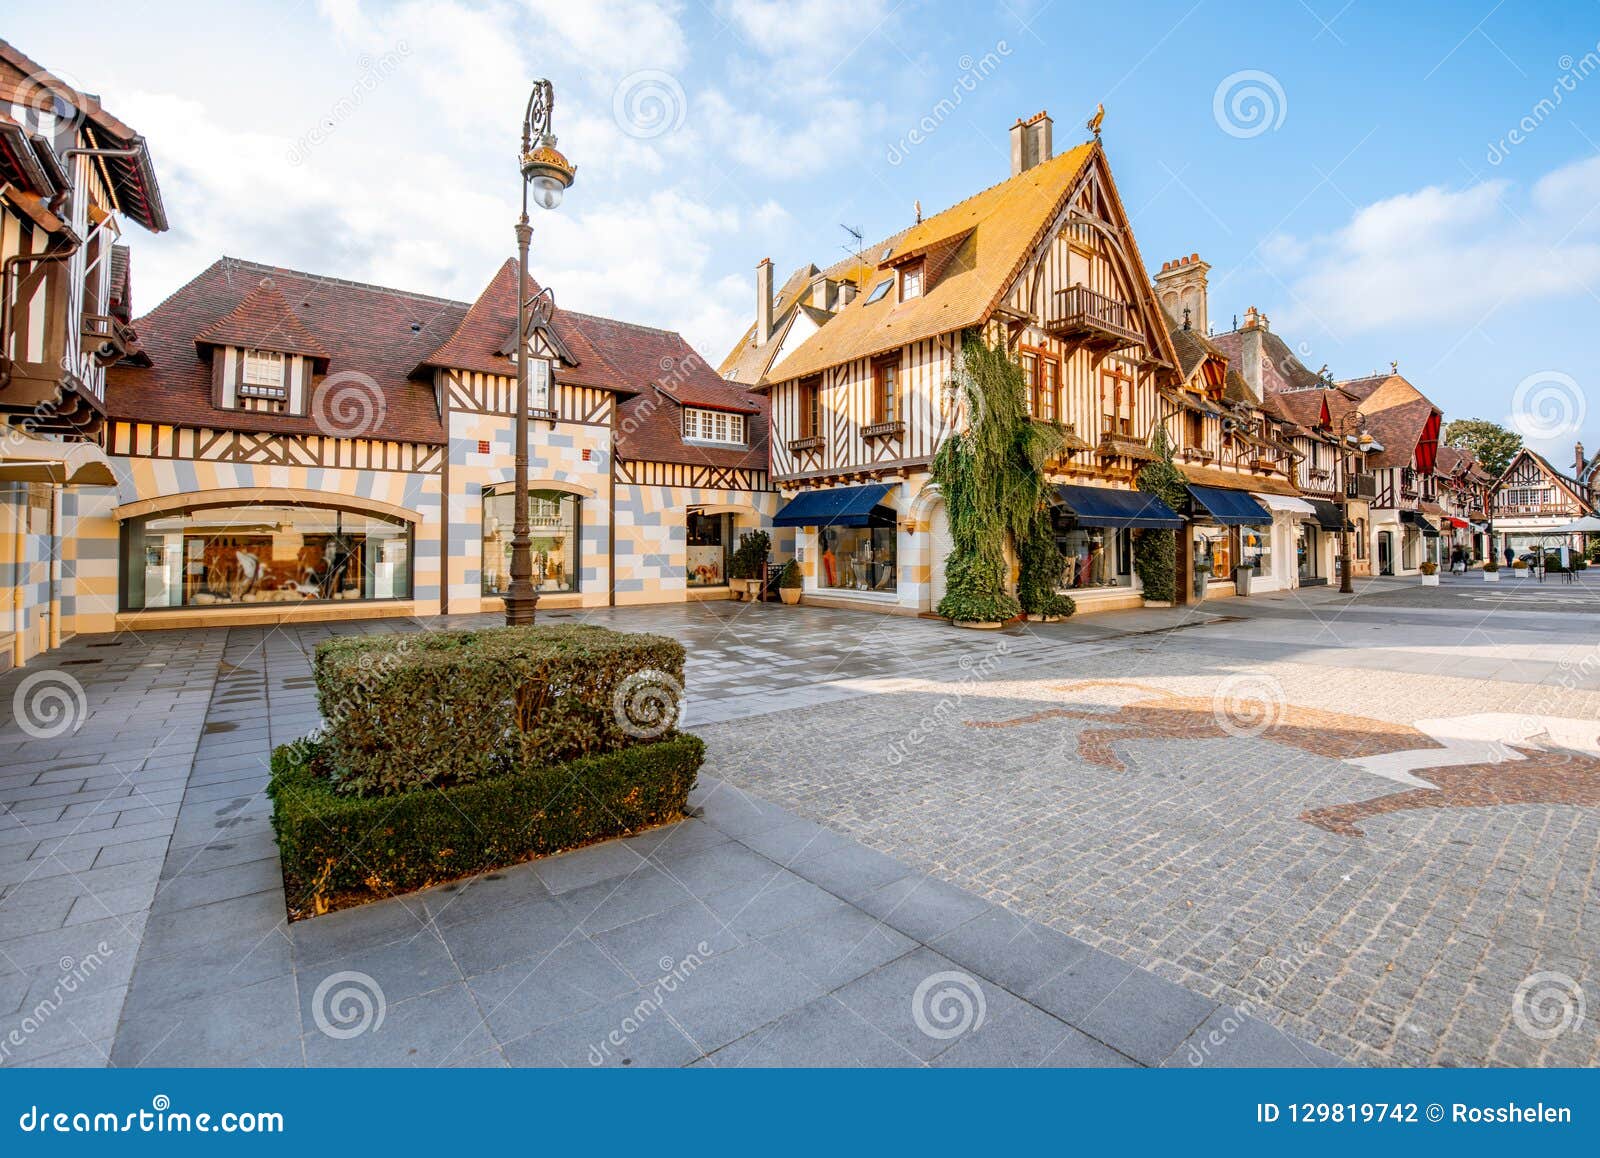 images de la ville de Deauville